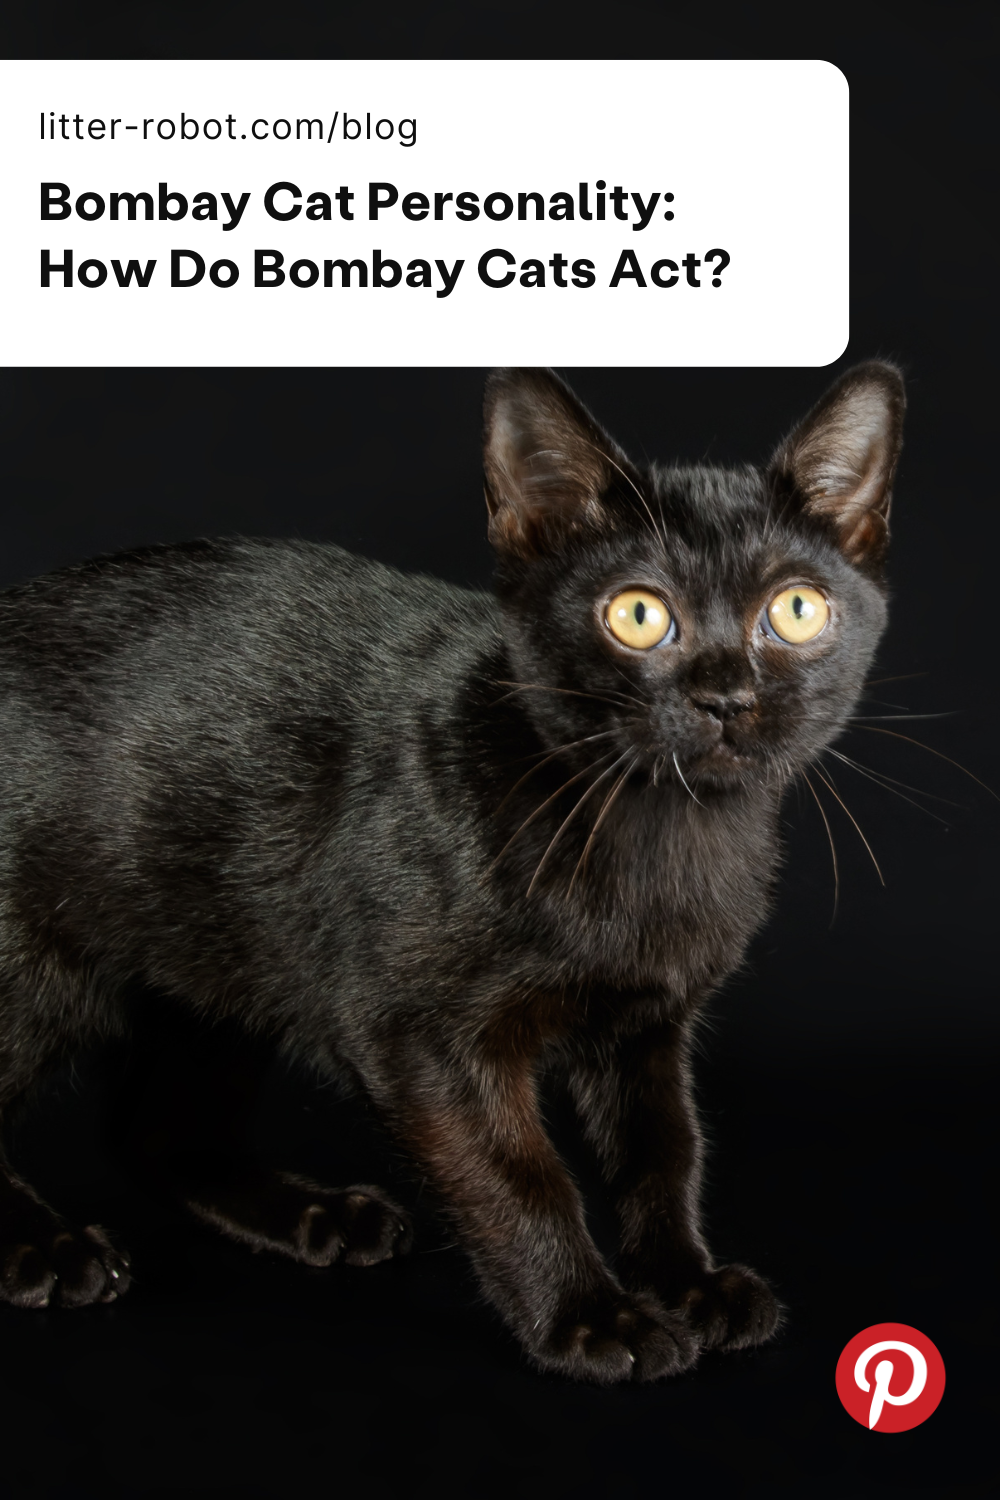 Bombay cat personality pinterest pin